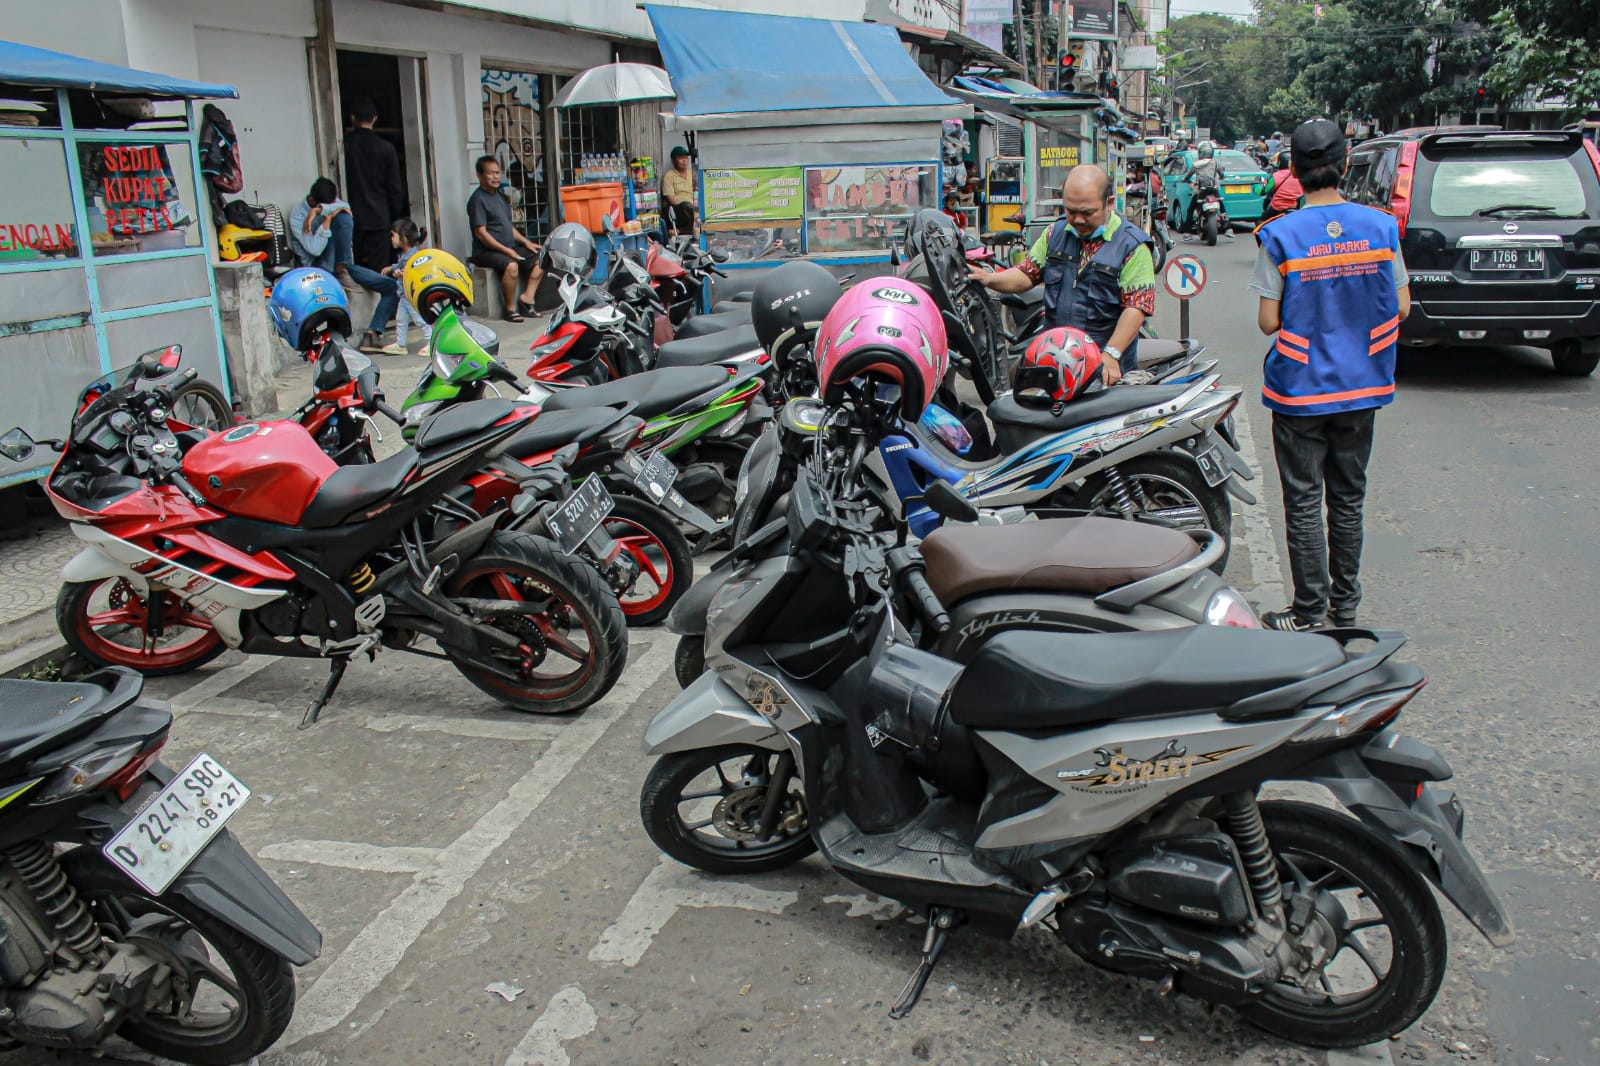 Dishub: Evaluasi Perwal Terkait Lokasi Parkir Liar di Kota Bandung!